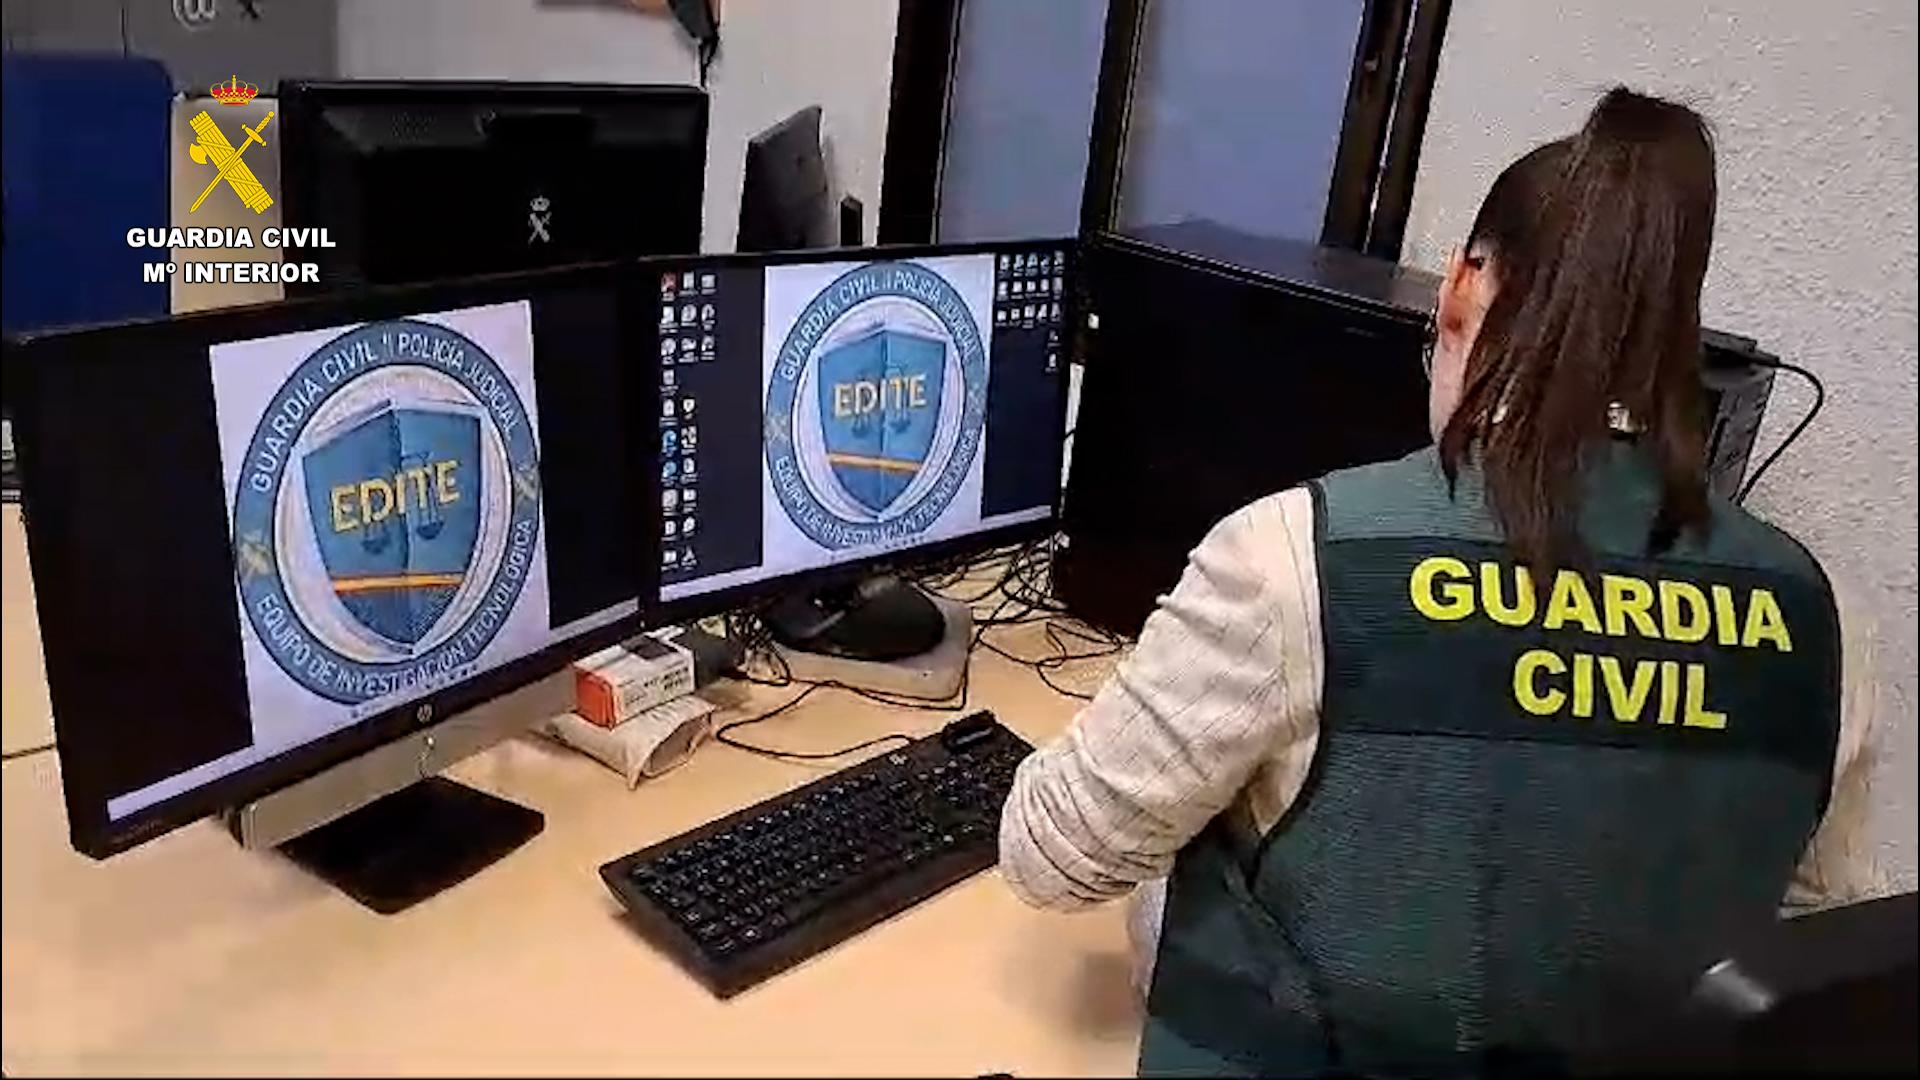 Una agente de la Guardia Civil inspecciona varios ordenadores